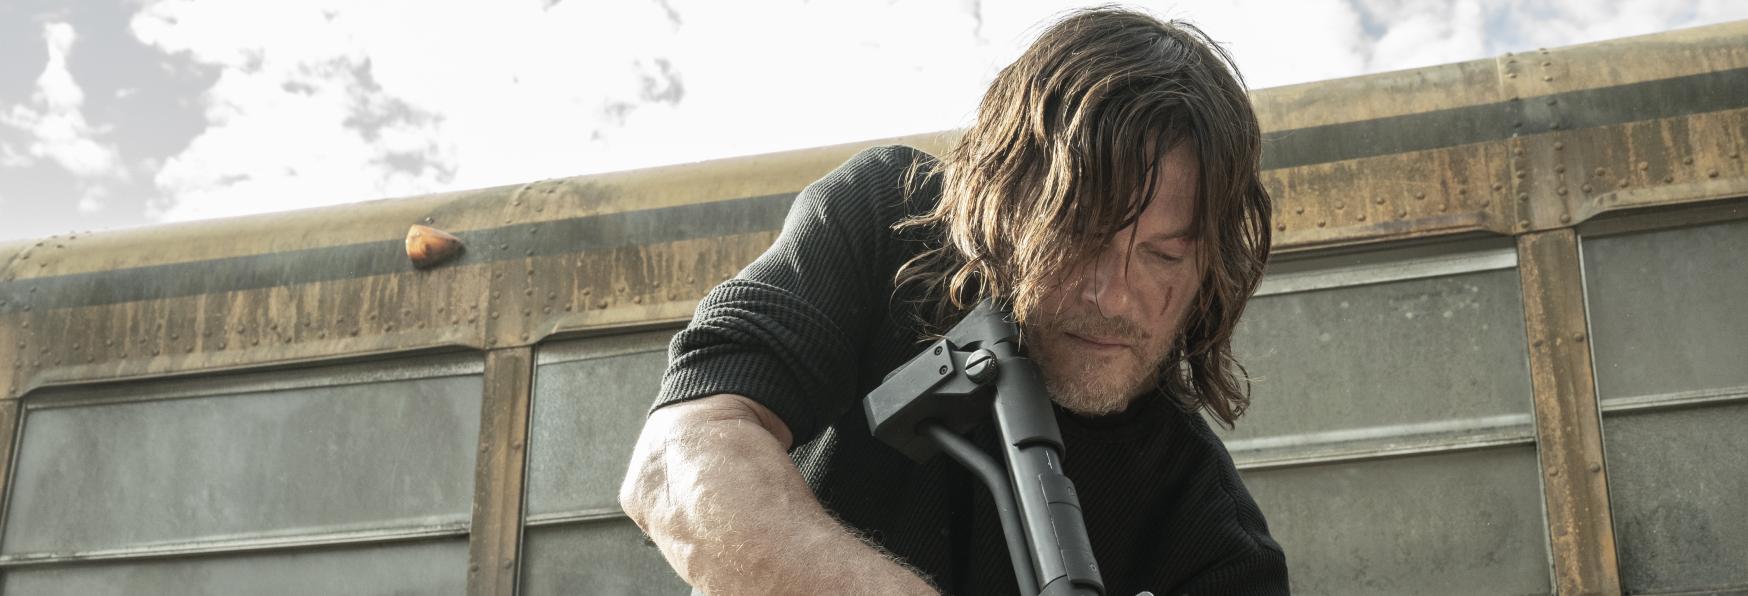 The Walking Dead: le Ultime Aggiunte al Cast dell'inedito Spin-off su Daryl